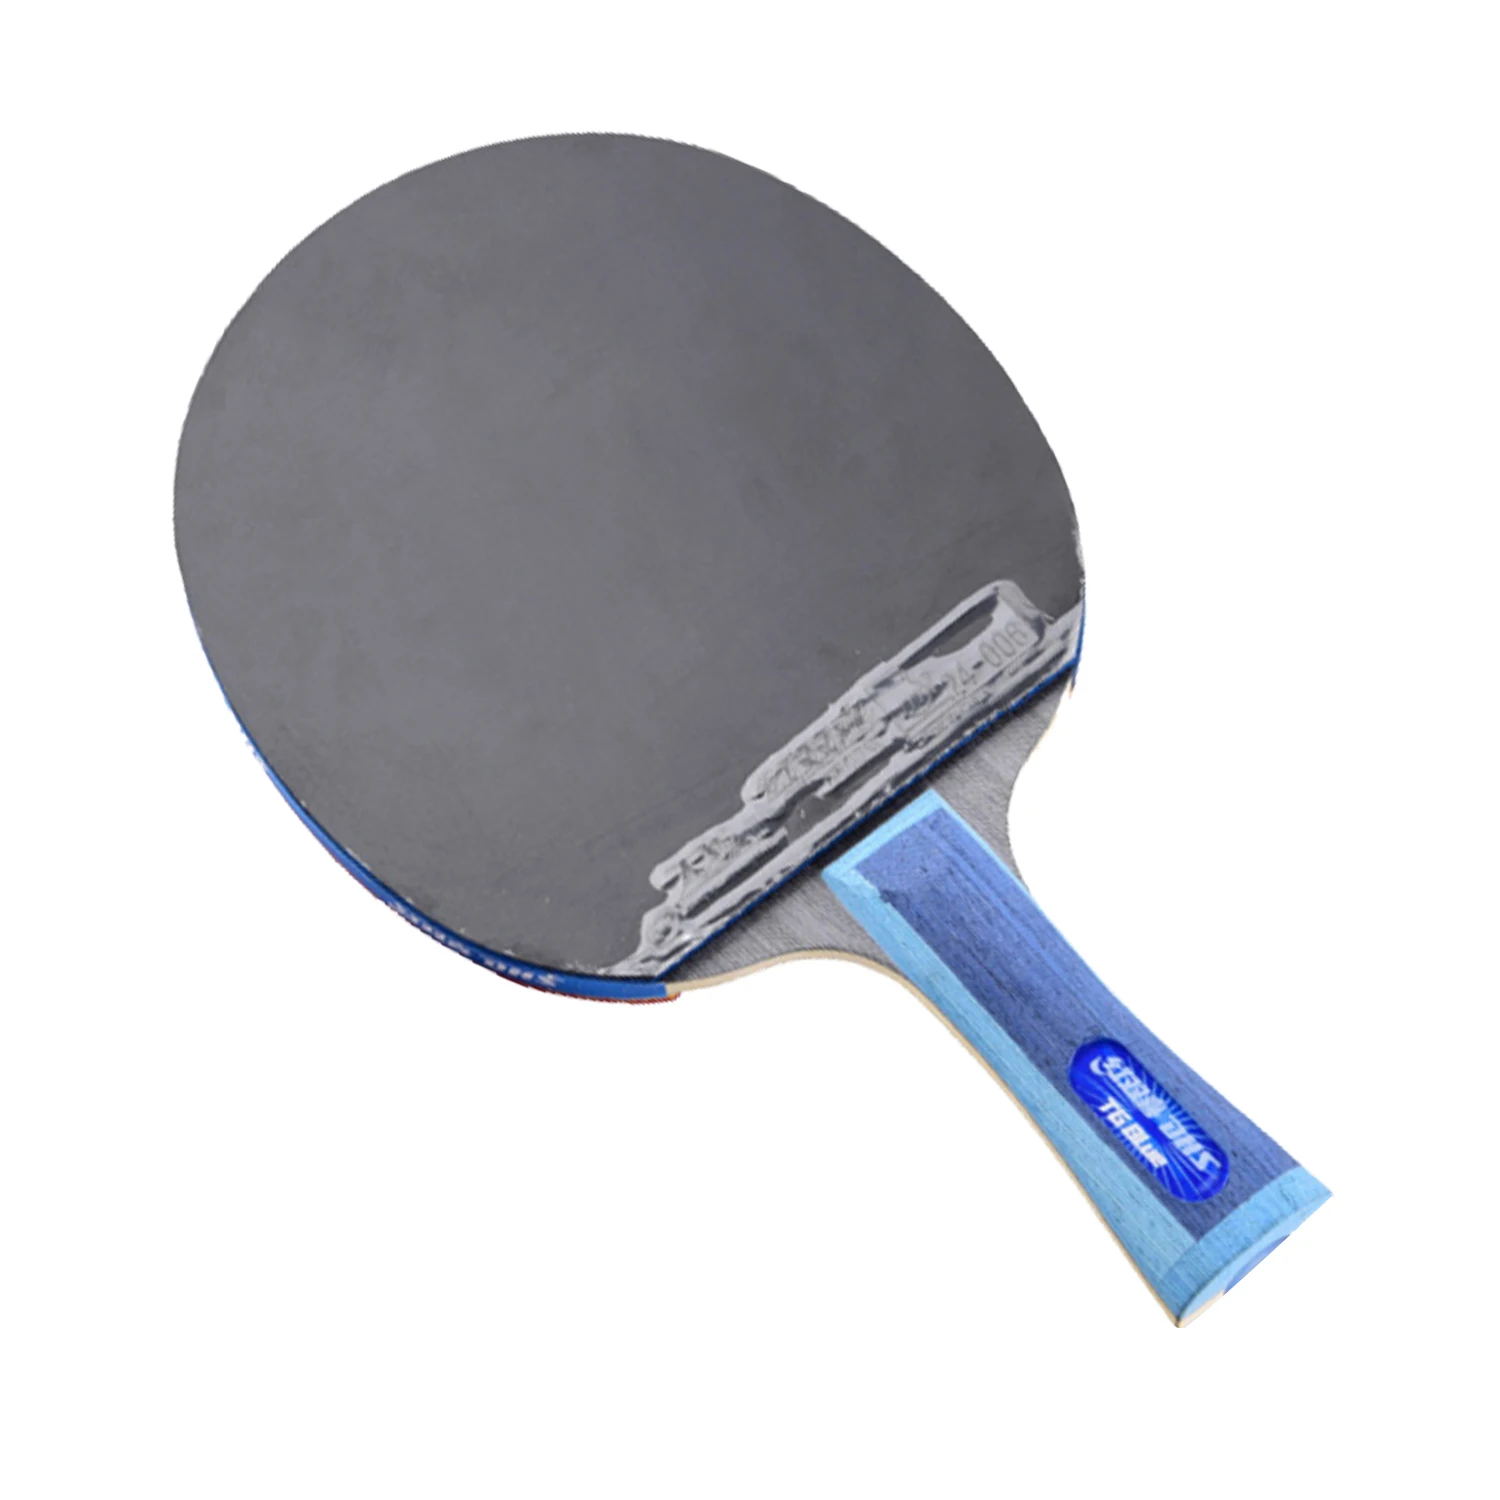 Ракетка для настольного тенниса DHS готовая ракетка TG blue rubber TG3 Tinarc pong | Спорт и